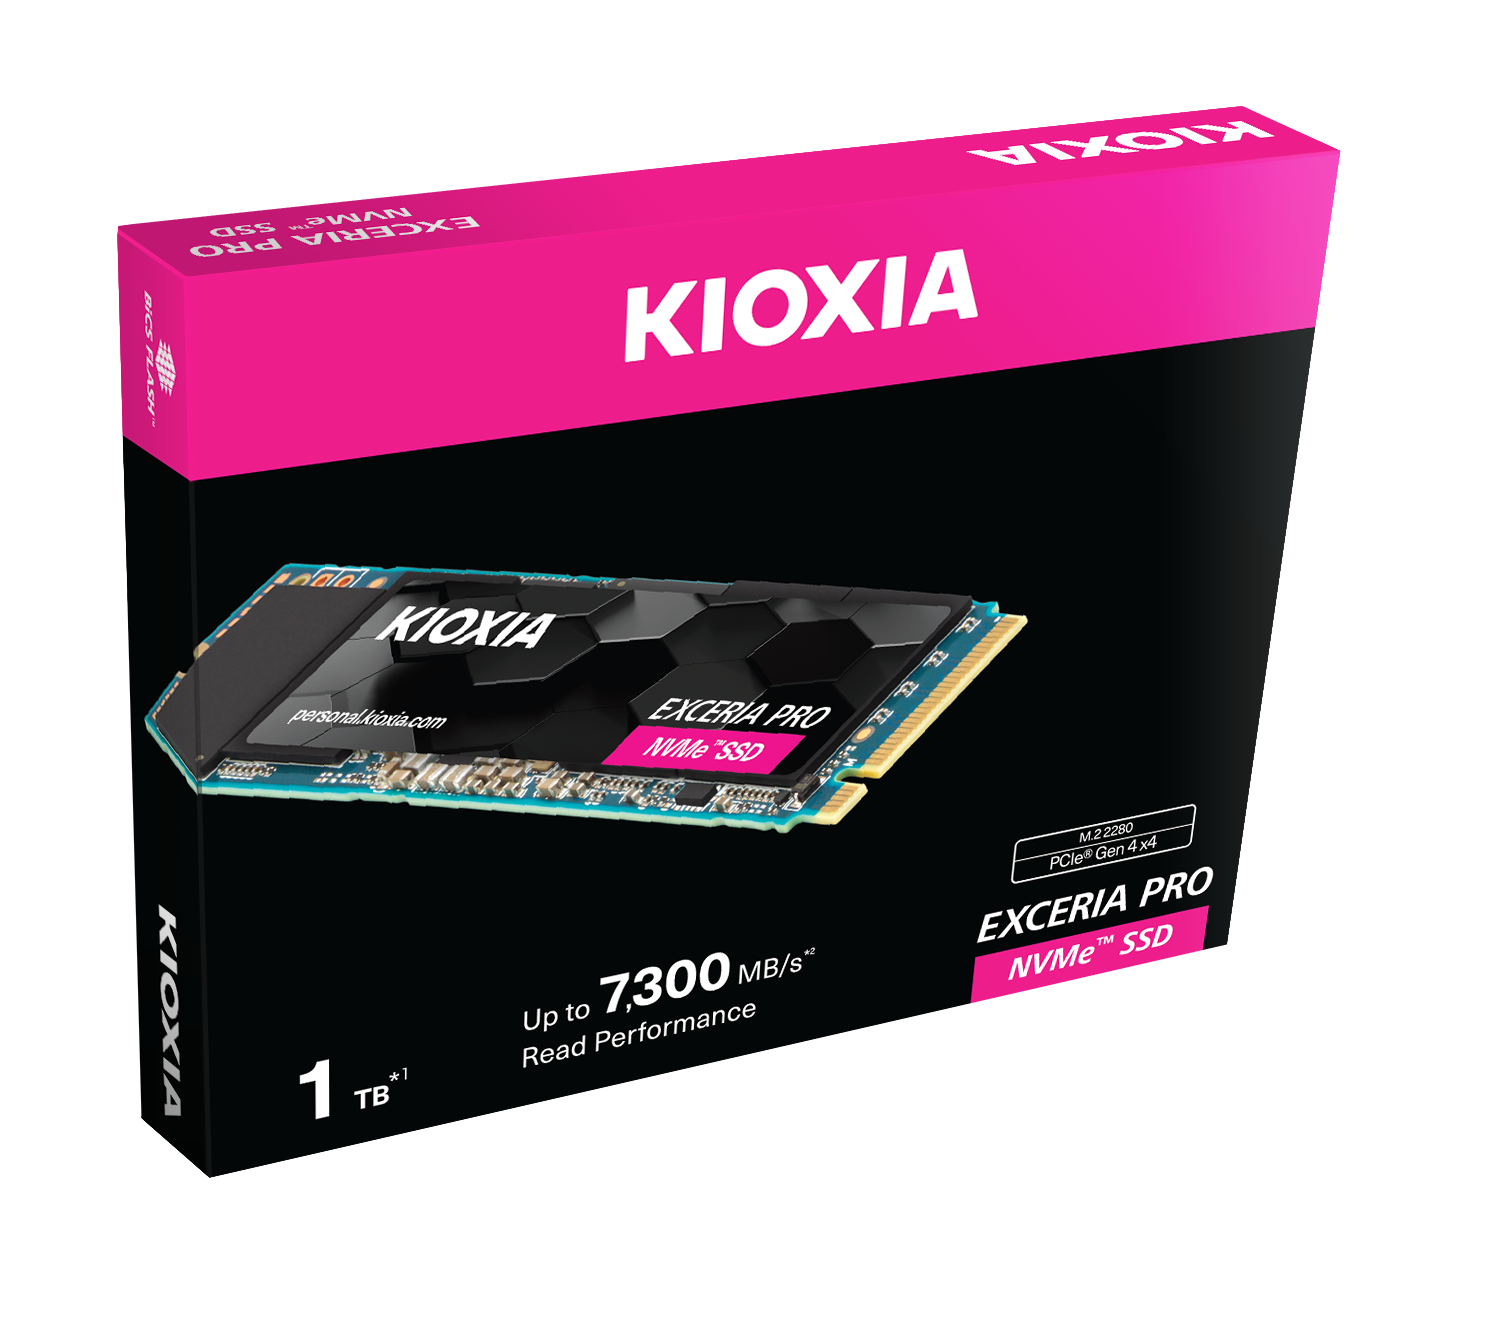 KIOXIA Exceria PRO NVME M.2. 2280 1TB RW 7300/6400 MB/s